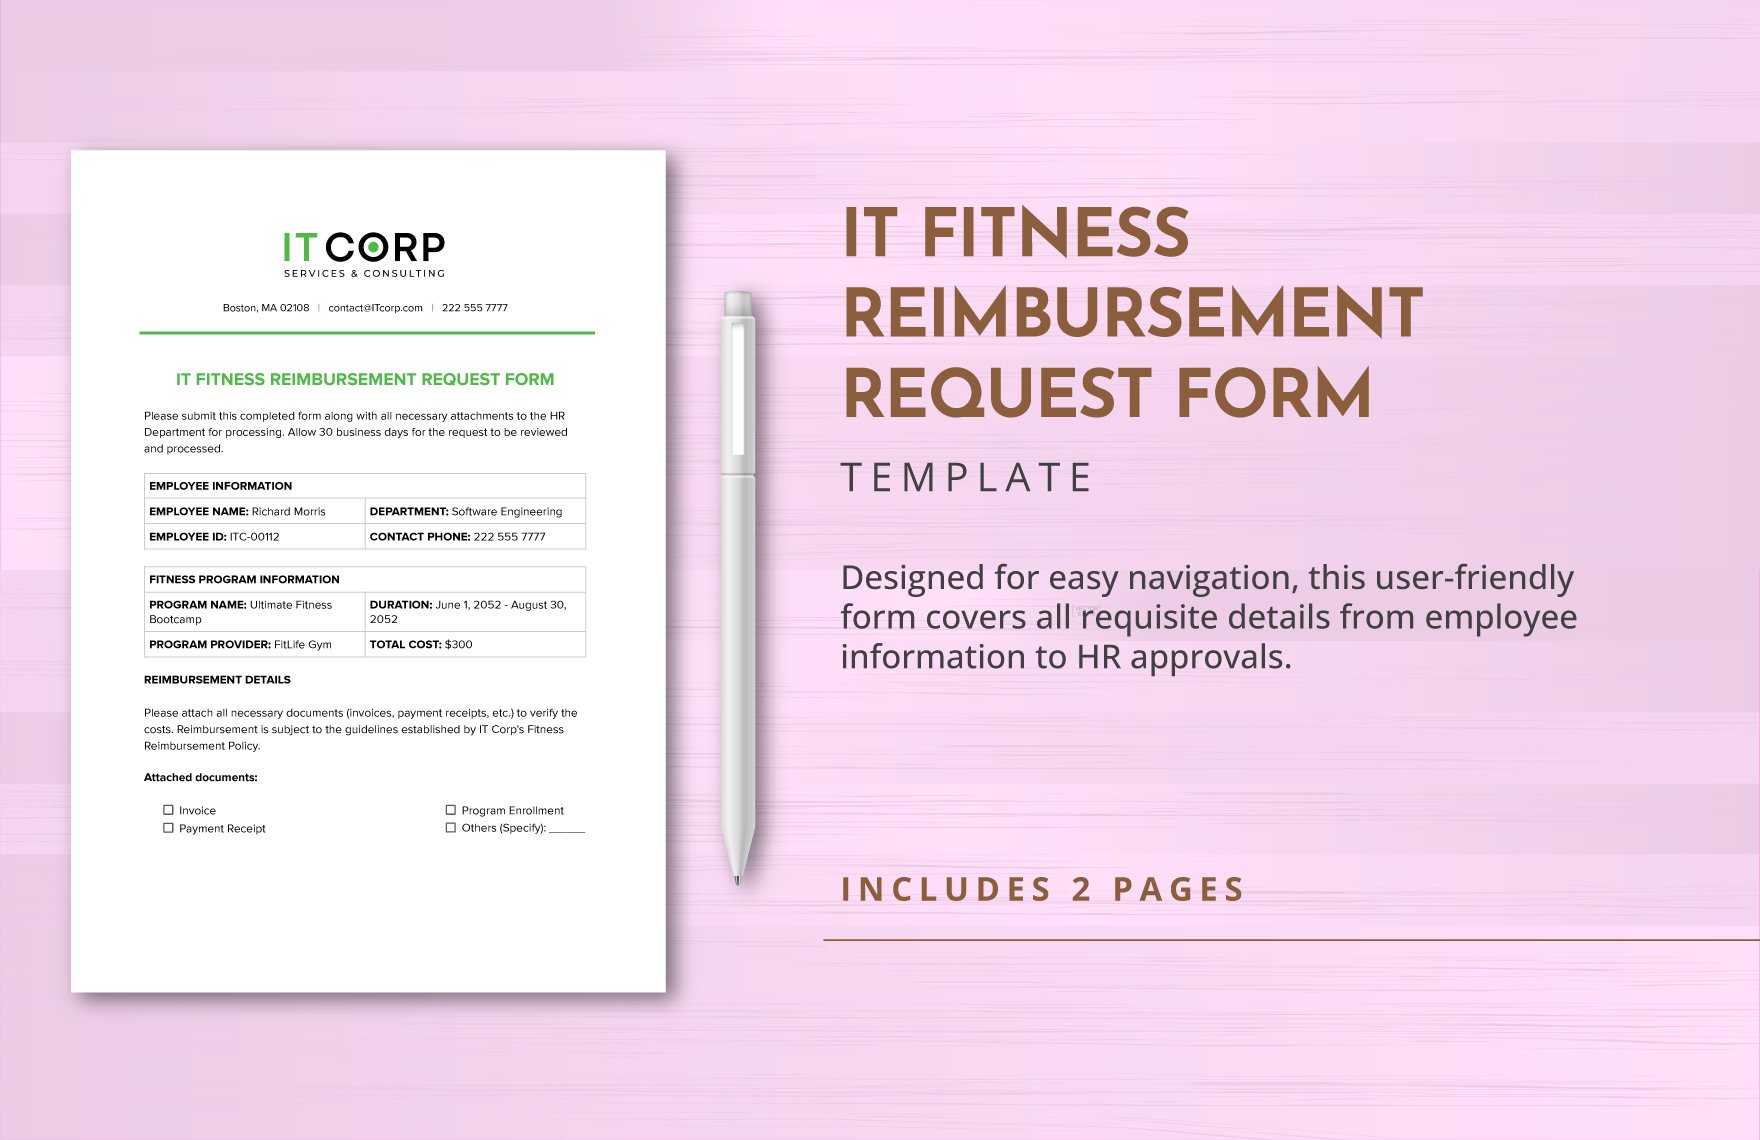 IT Fitness Reimbursement Request Form Template in Word, Google Docs, PDF